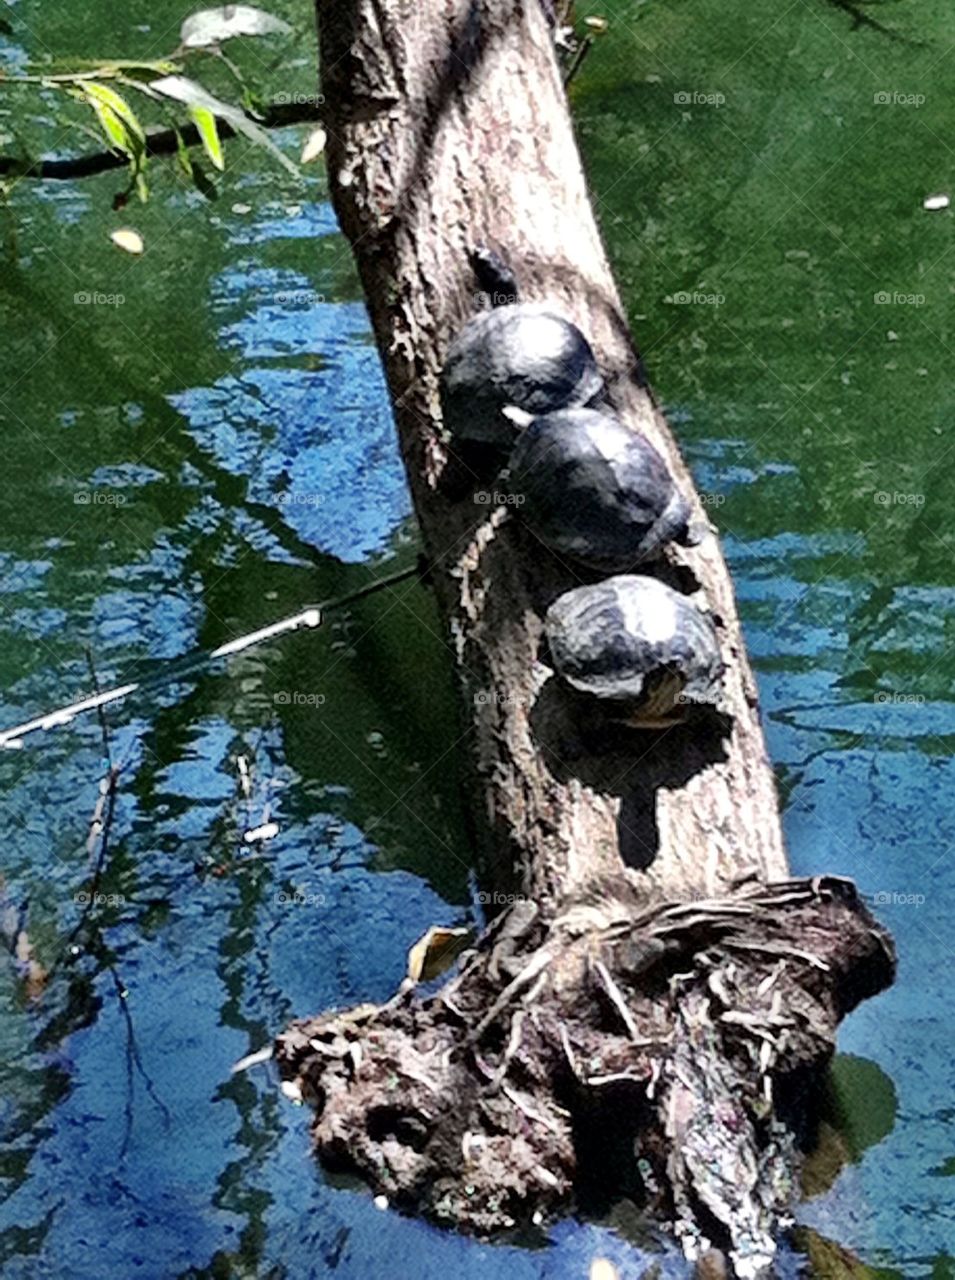 Three turtles on a Tree